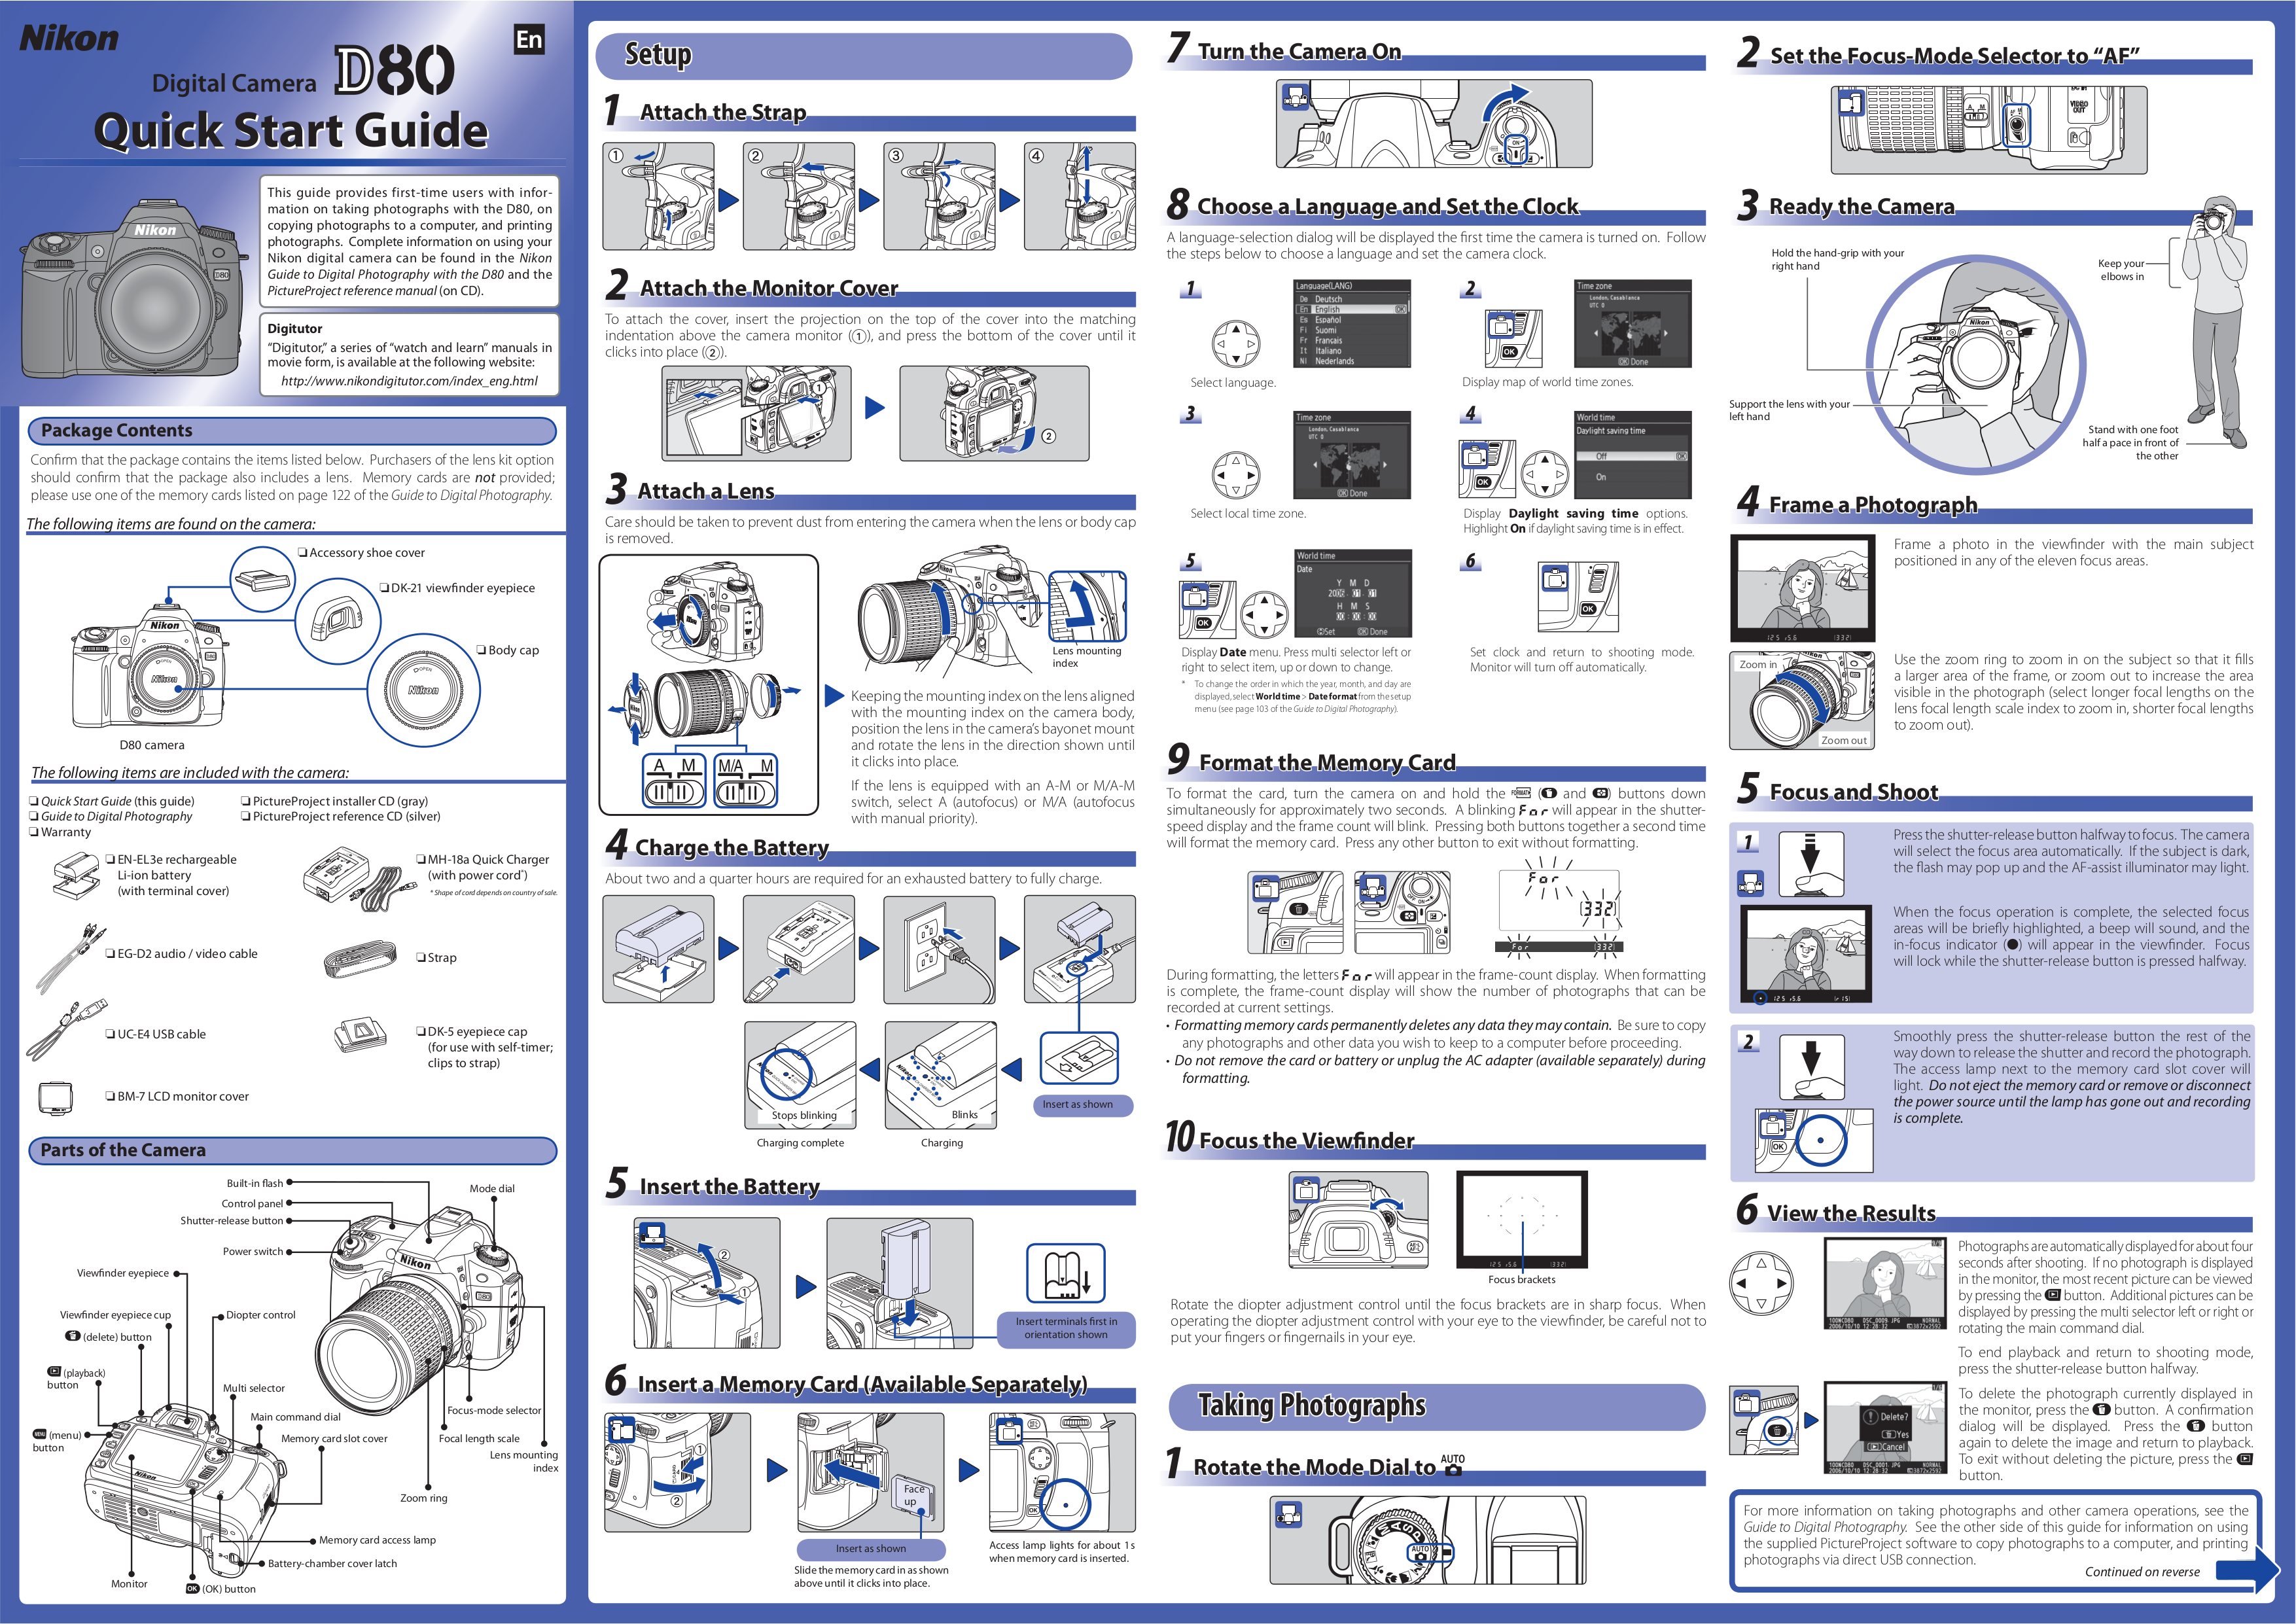 Nikon d80 инструкция по эксплуатации